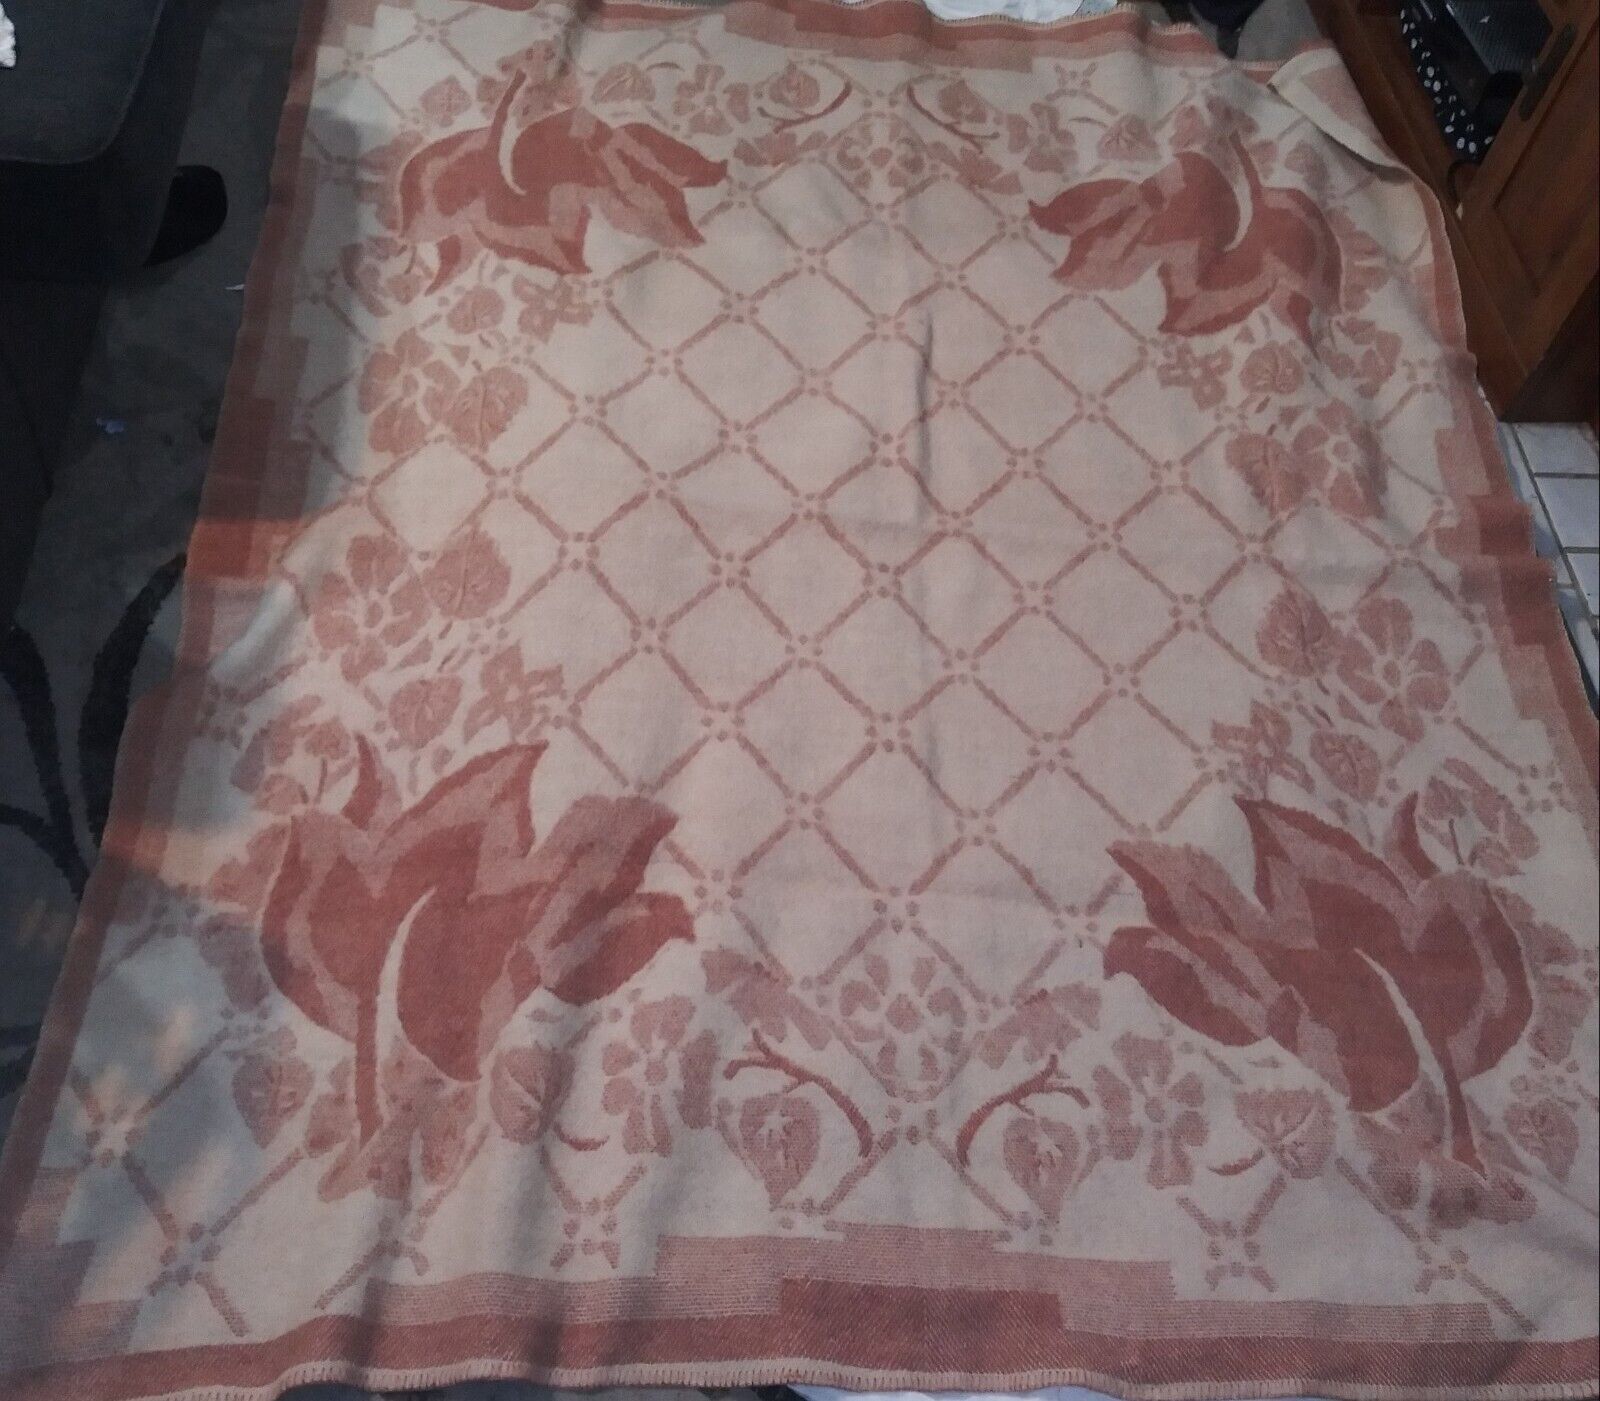 Orr Health 100% Wool Blanket 78” x 88” Pink  & Cream Reversible Floral Vintage